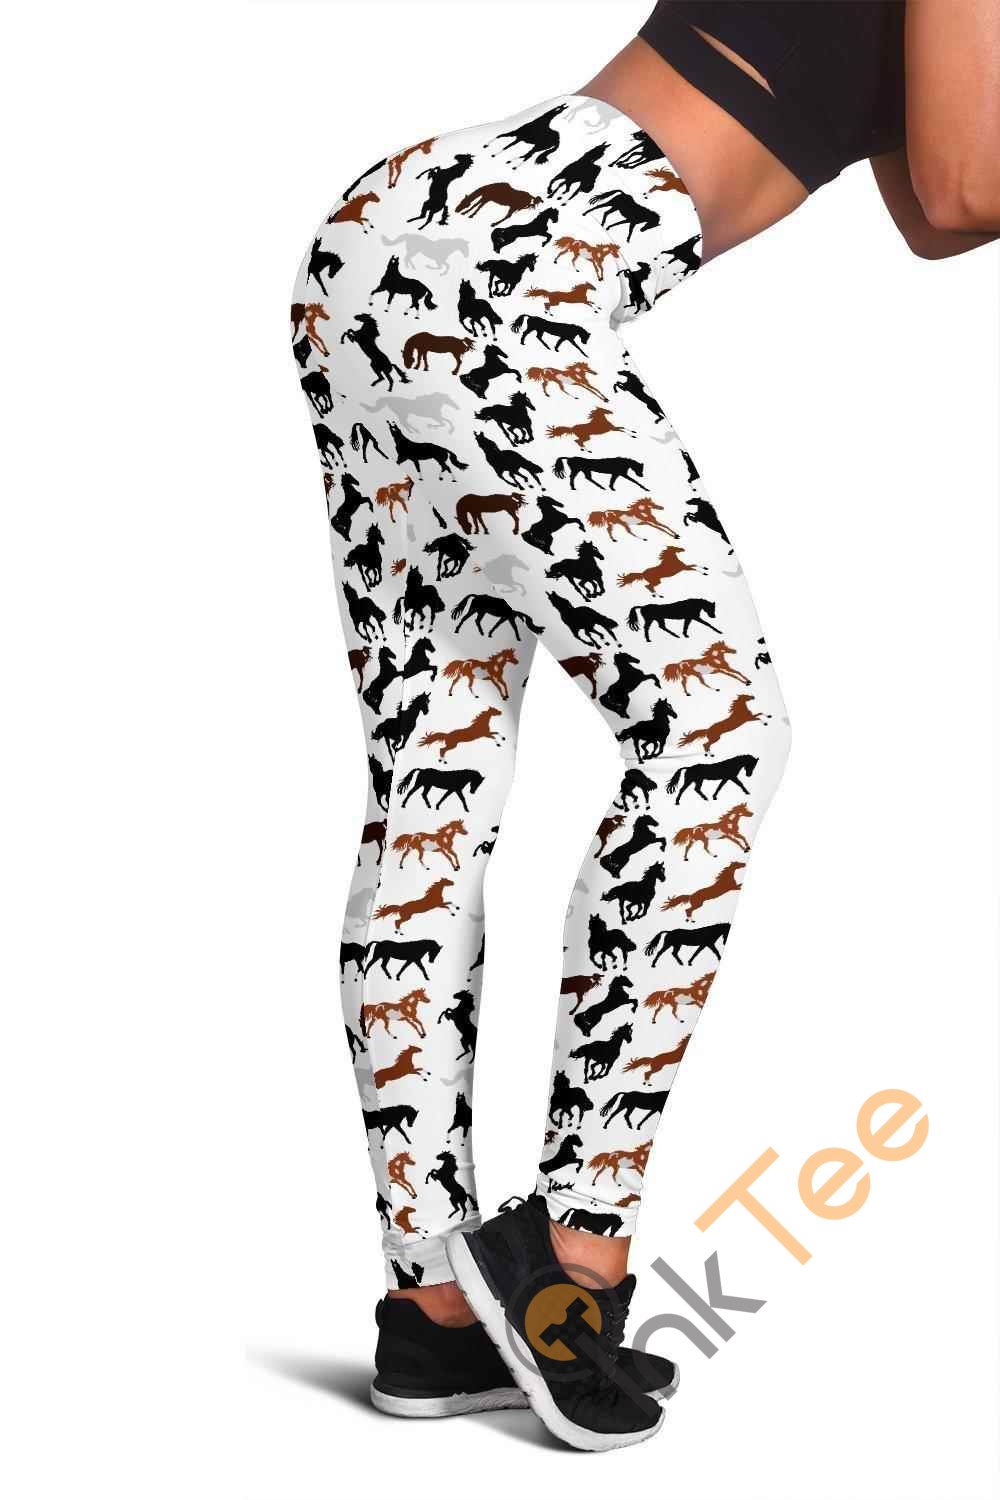 Inktee Store - Horse 3D All Over Print For Yoga Fitness Women'S Leggings Image